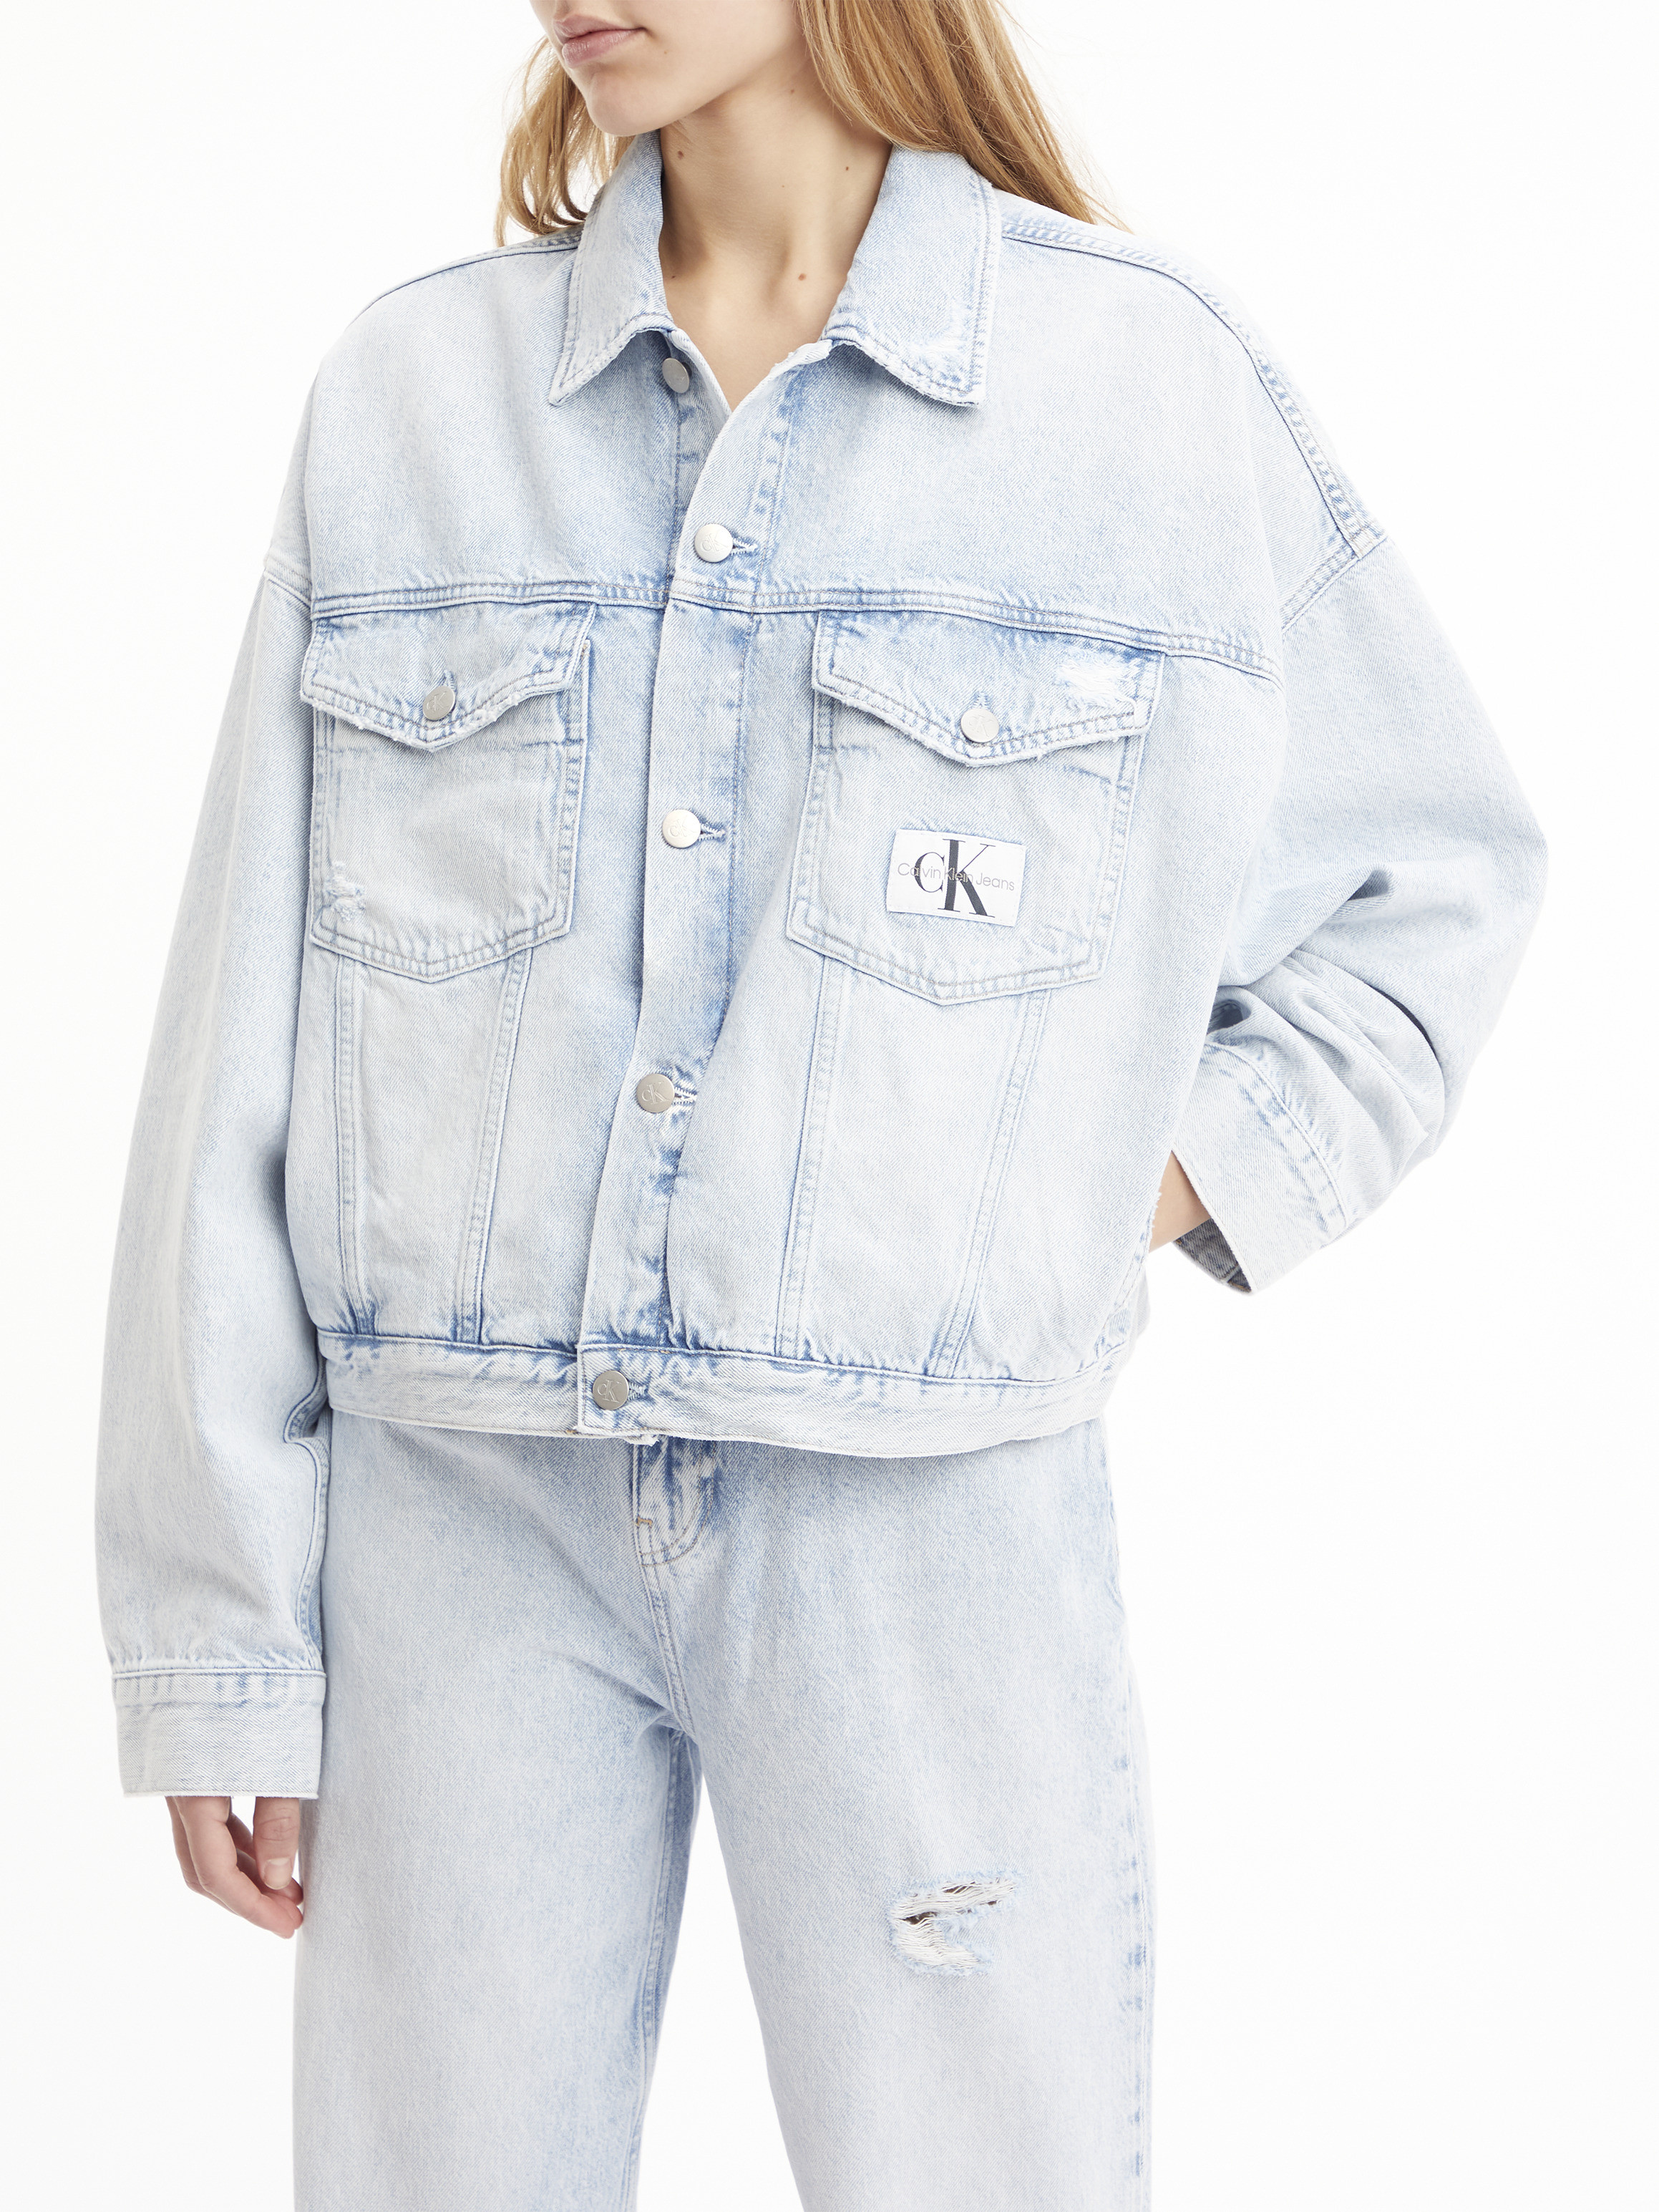 Calvin Klein Jeans - Oversized cropped denim jacket, Denim, large image number 3